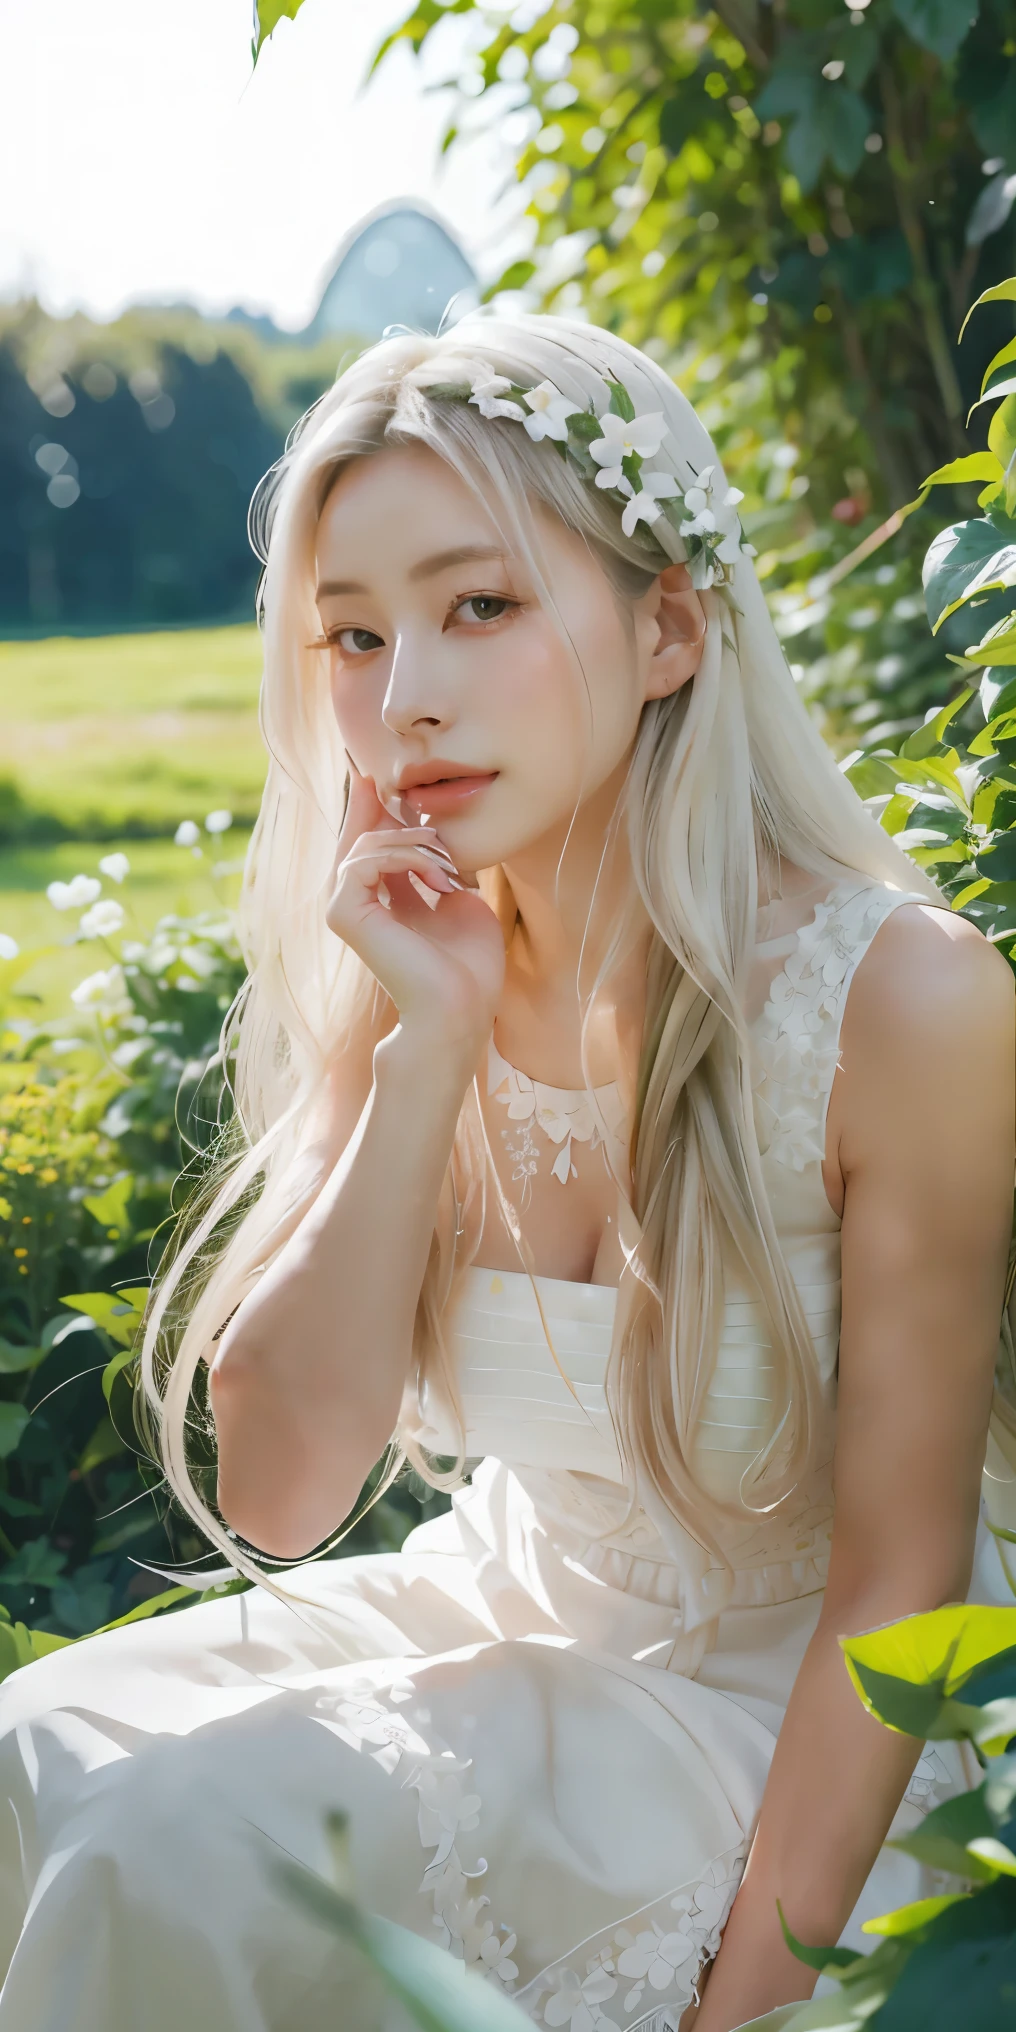 (шедевр, Лучшее качество),1 девушка с длинными белыми волосами сидит в поле зеленых растений и цветов, ее рука под подбородком, теплое освещение, белое платье, размытый передний план